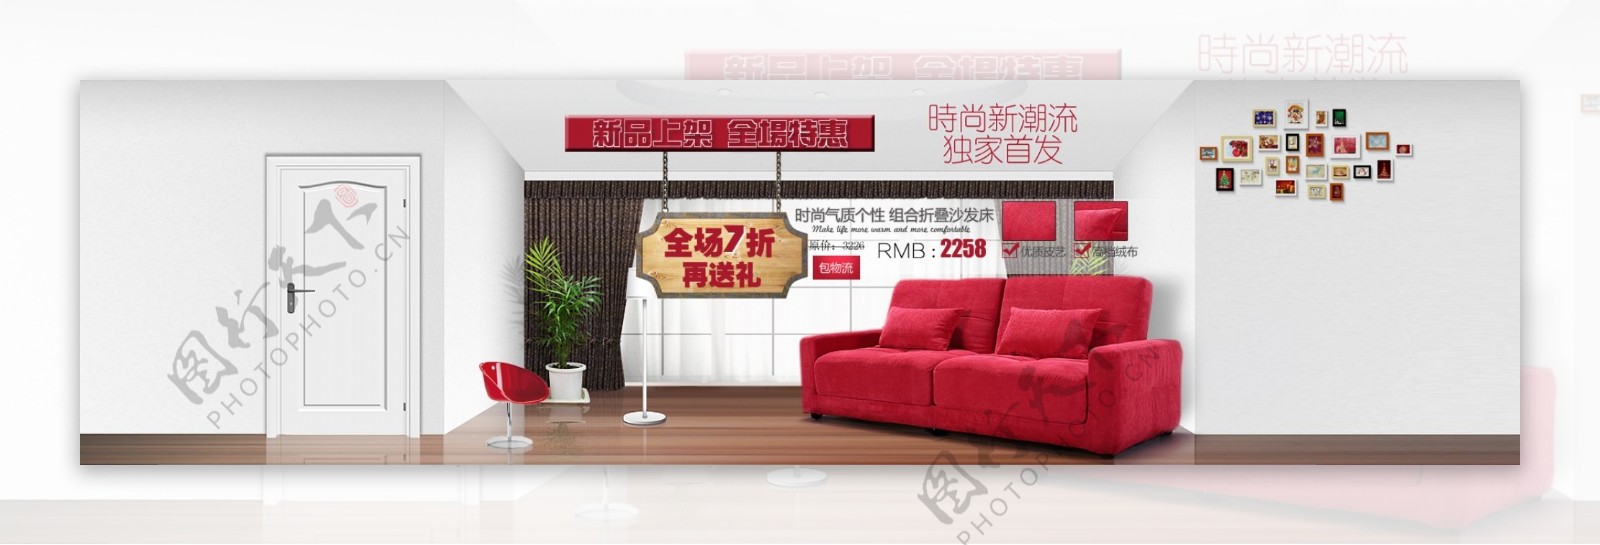 折叠沙发床促销网页图片